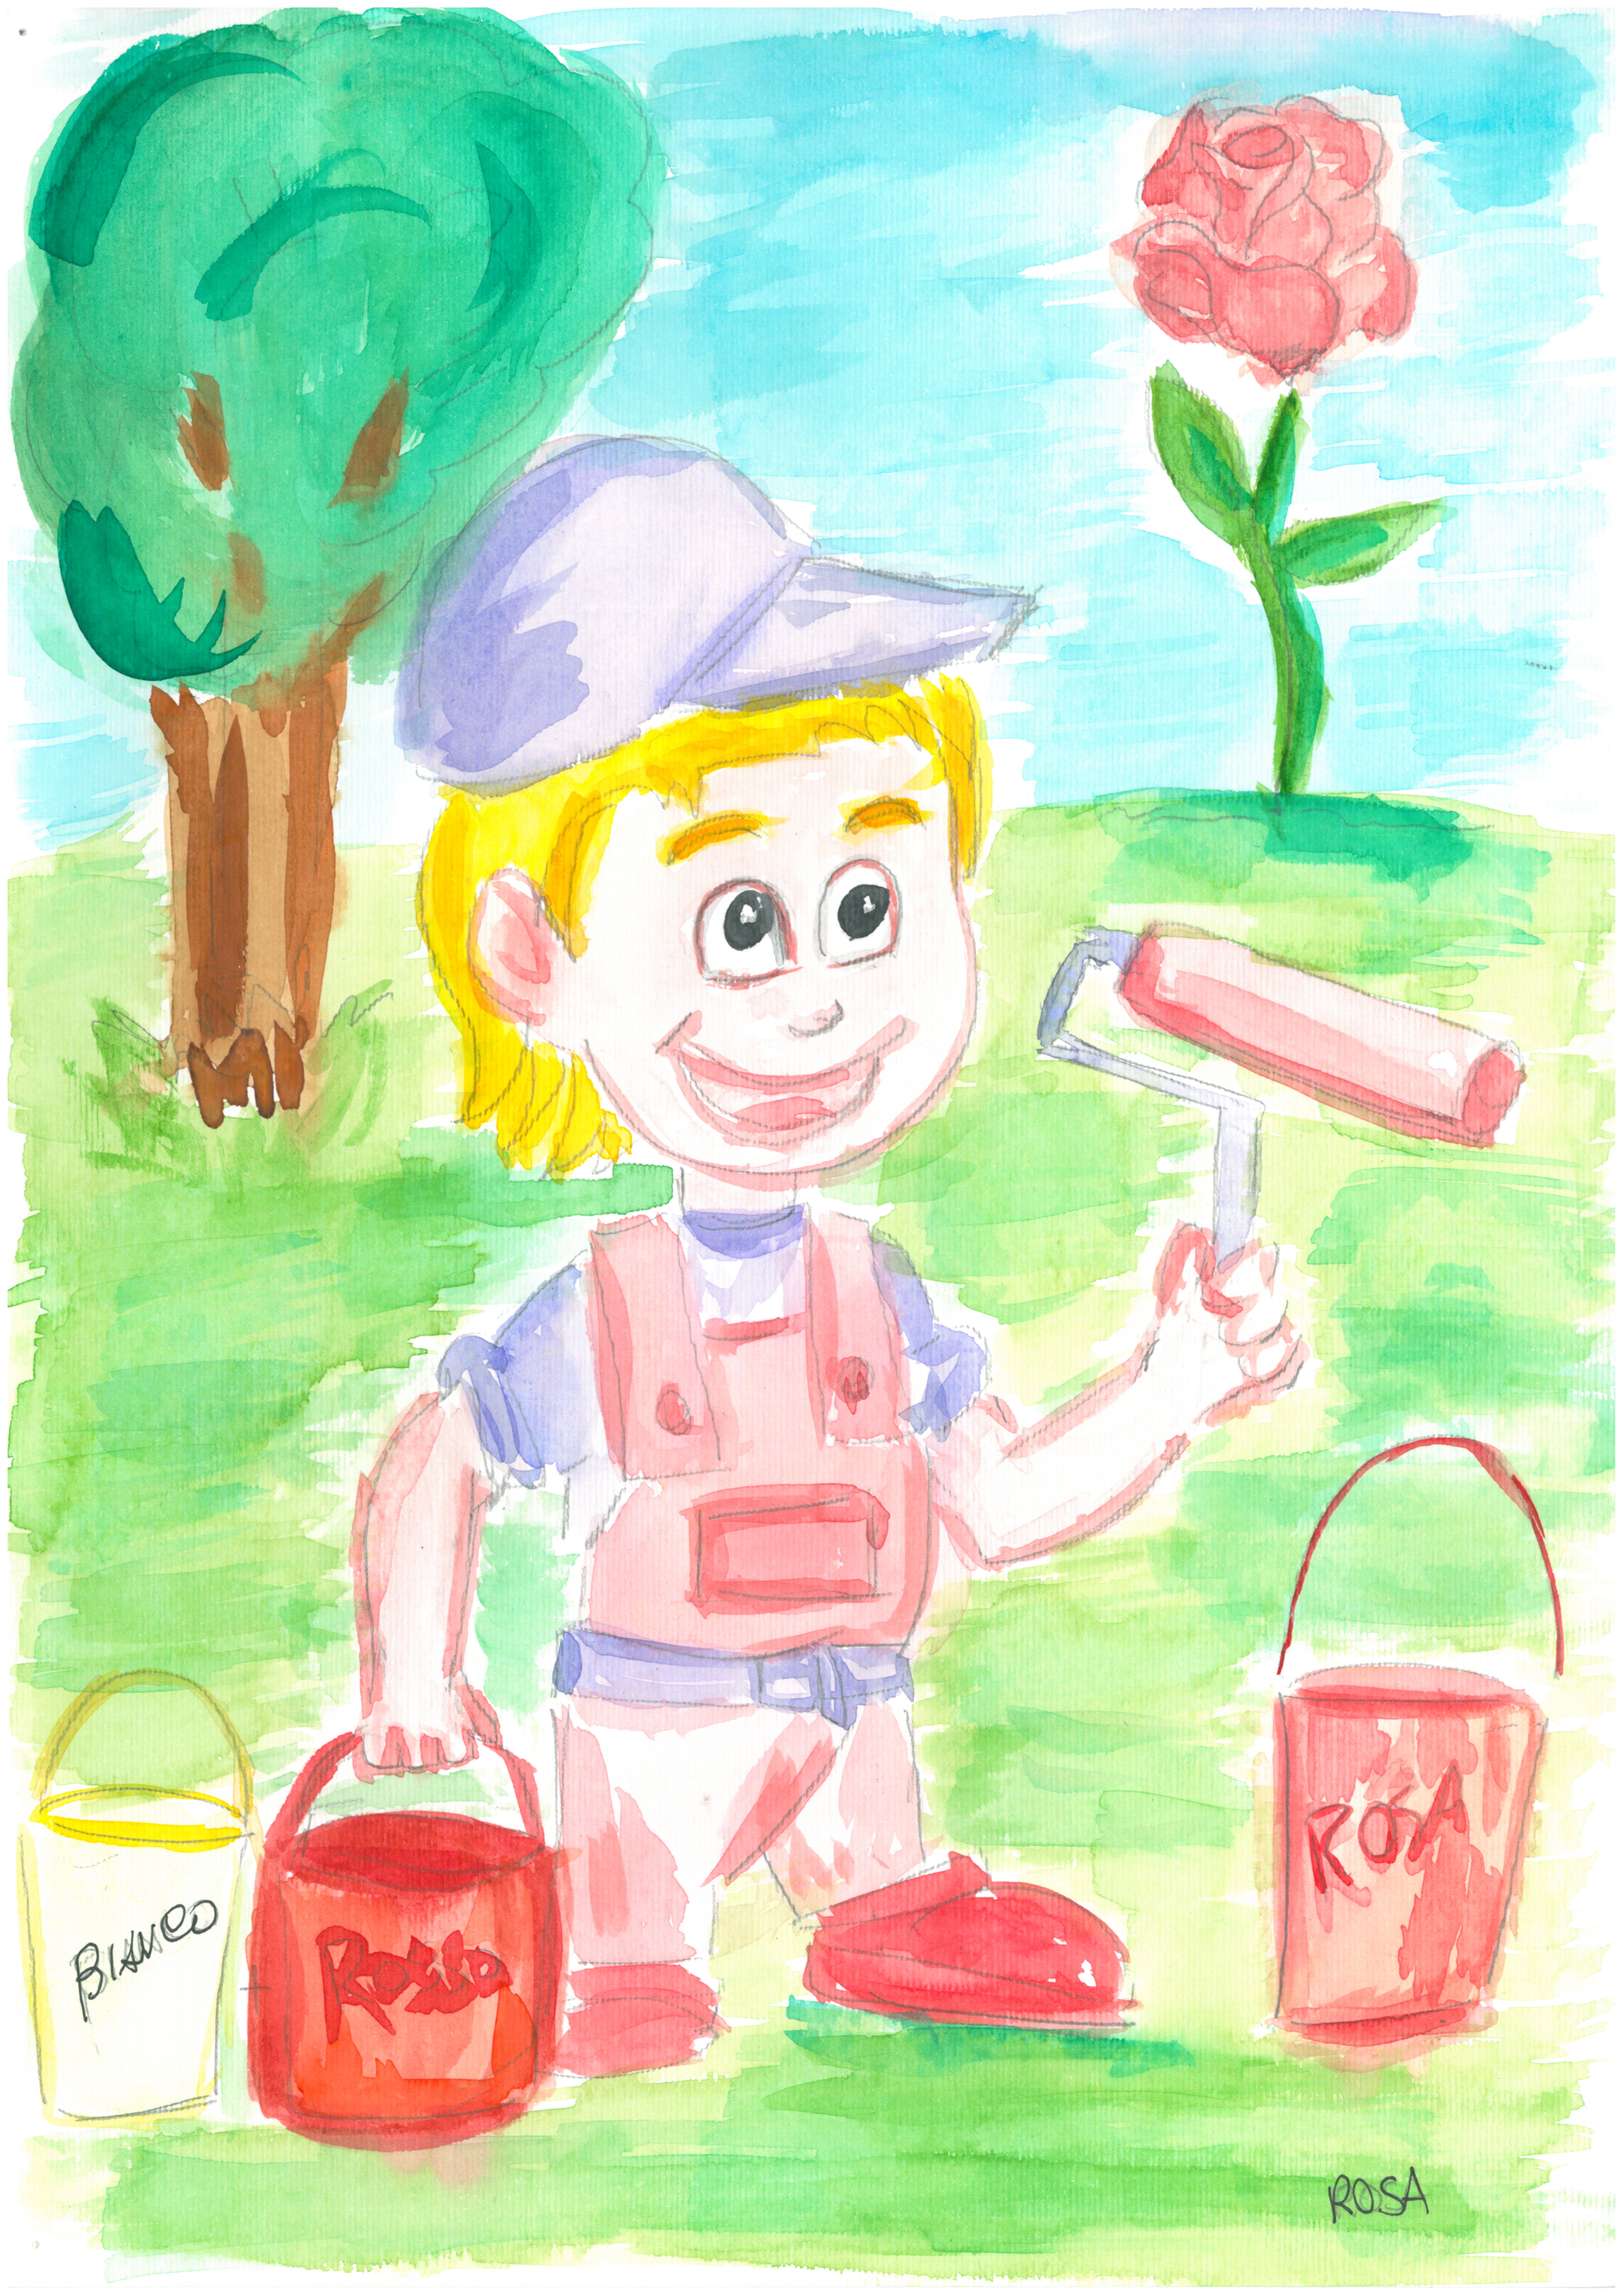 L'imbianchino Pennellino con un rullo da pittura in mano e accanto tre secchi di colore: bianco, rosso e rosa.